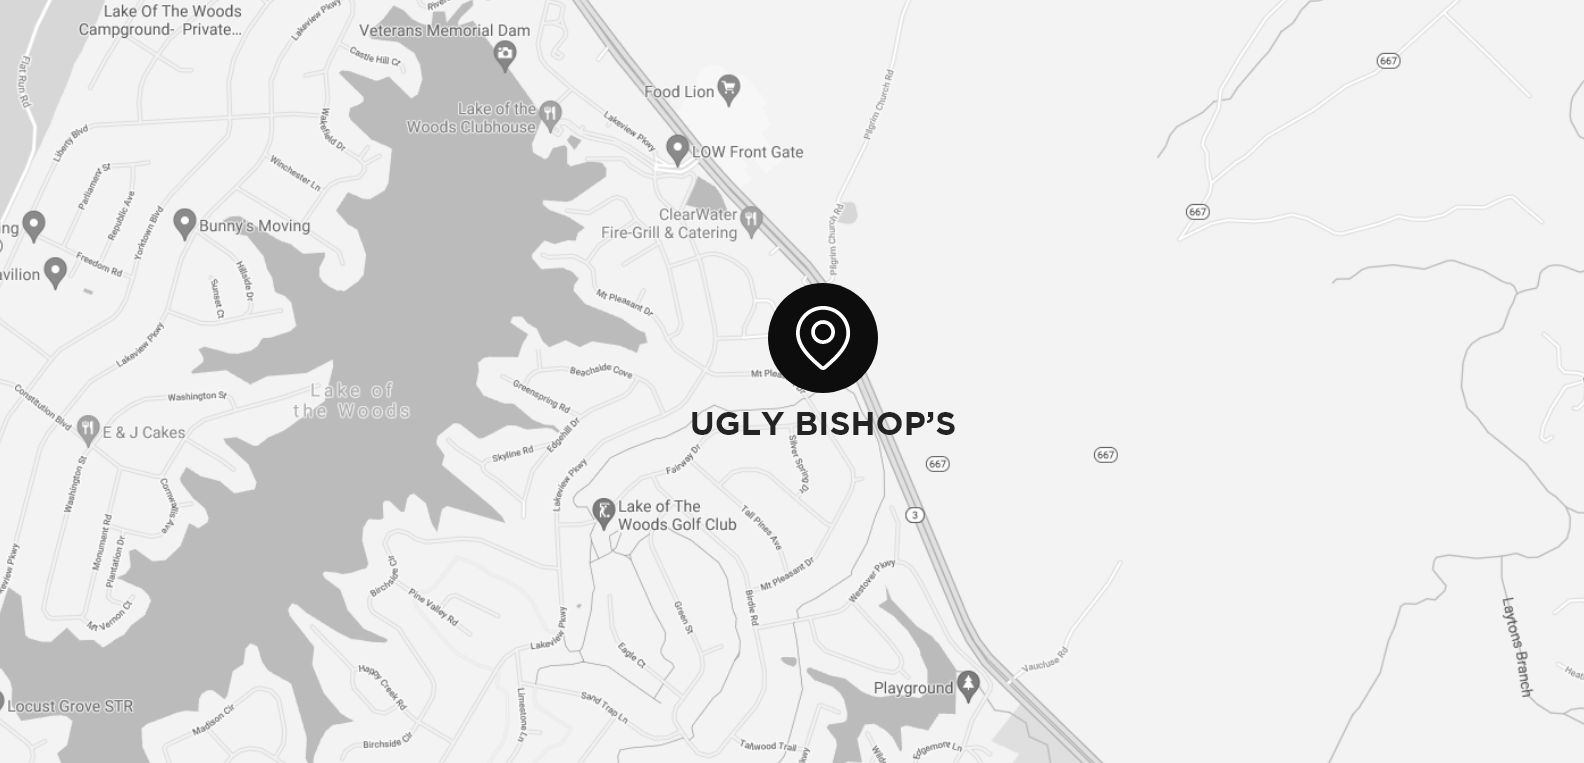 map of ugly bishop's studio in locust grove